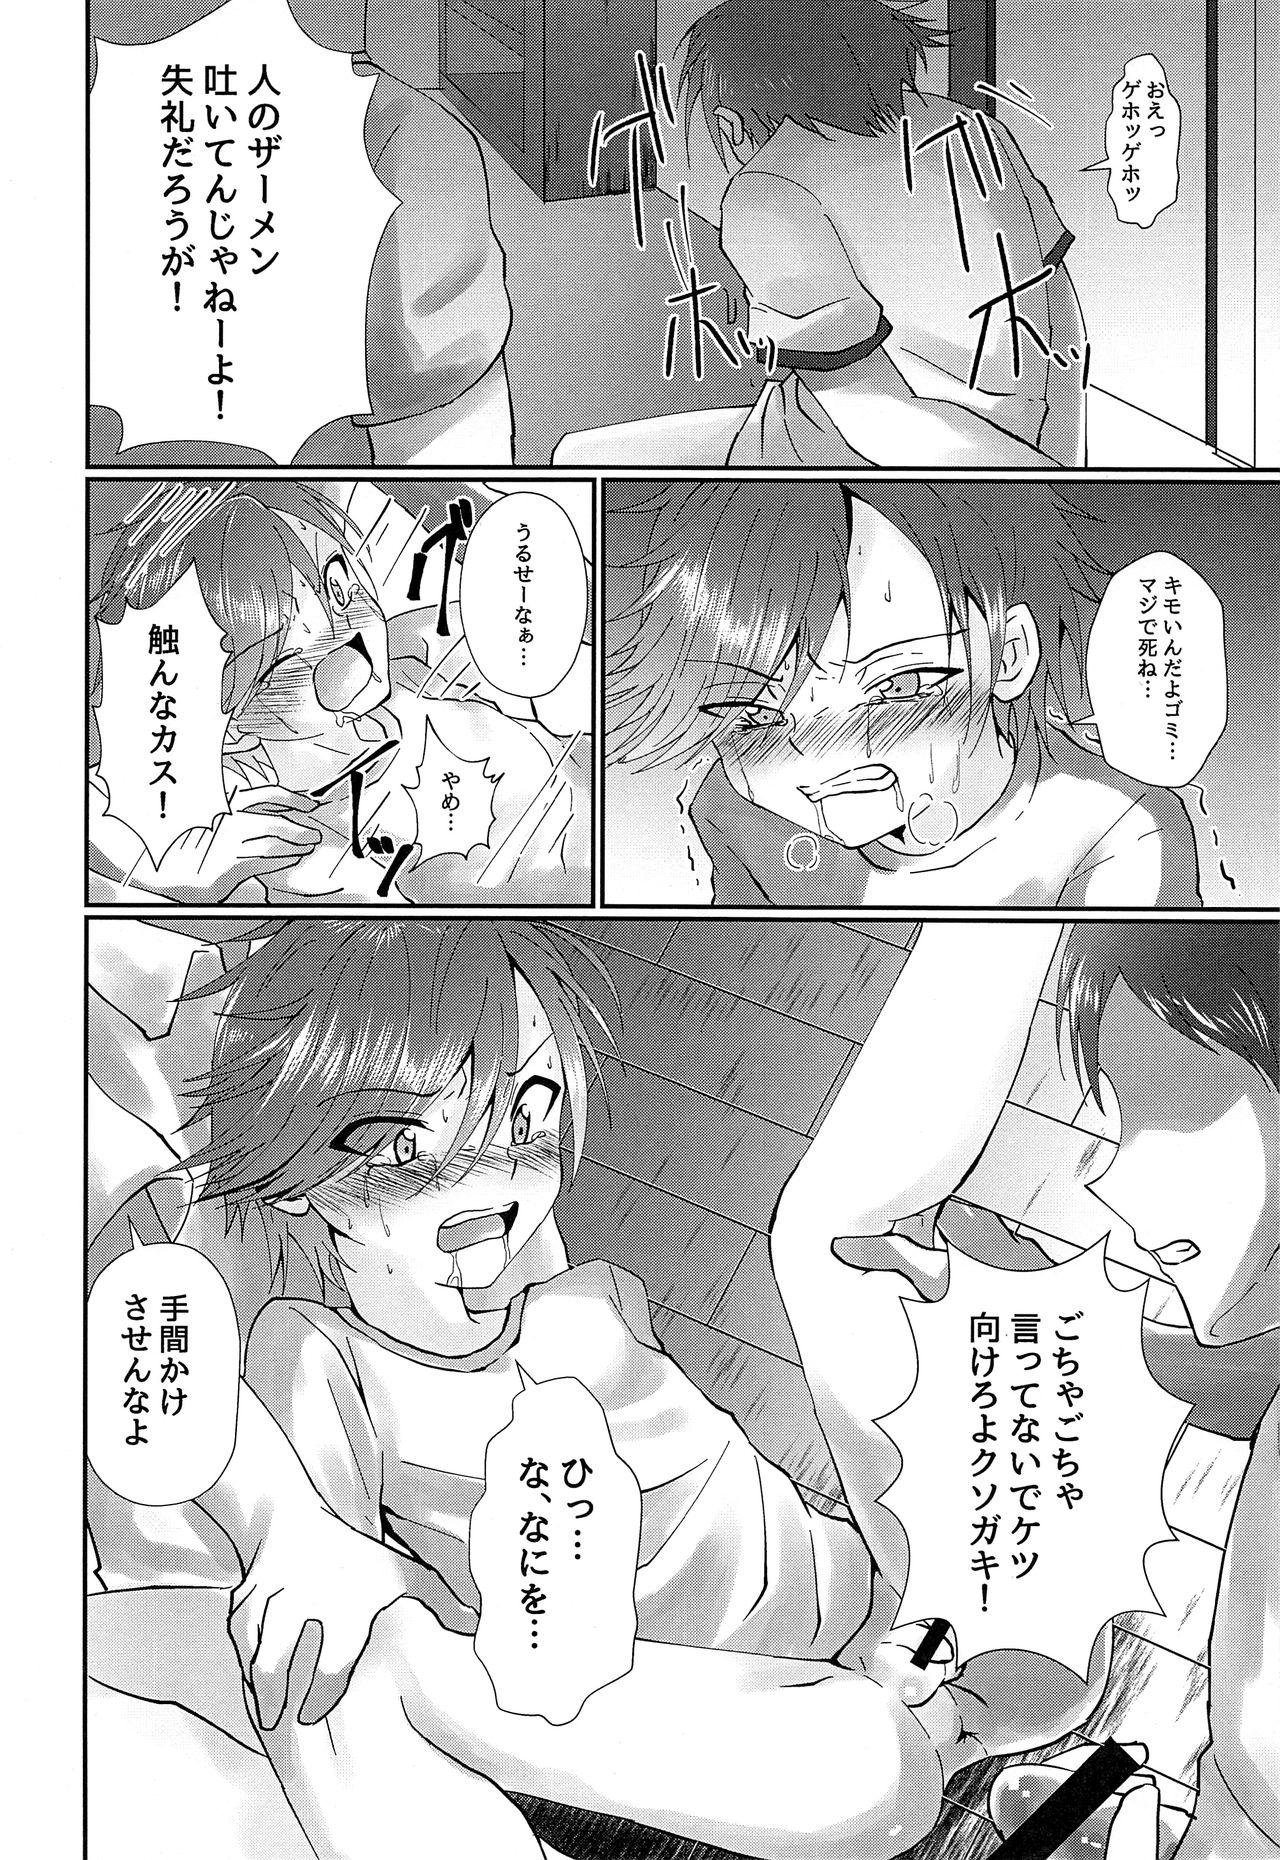 Cum Swallow ki no tsuyoi shōnen o ri fujin ni re! vol.1 Topless - Page 11